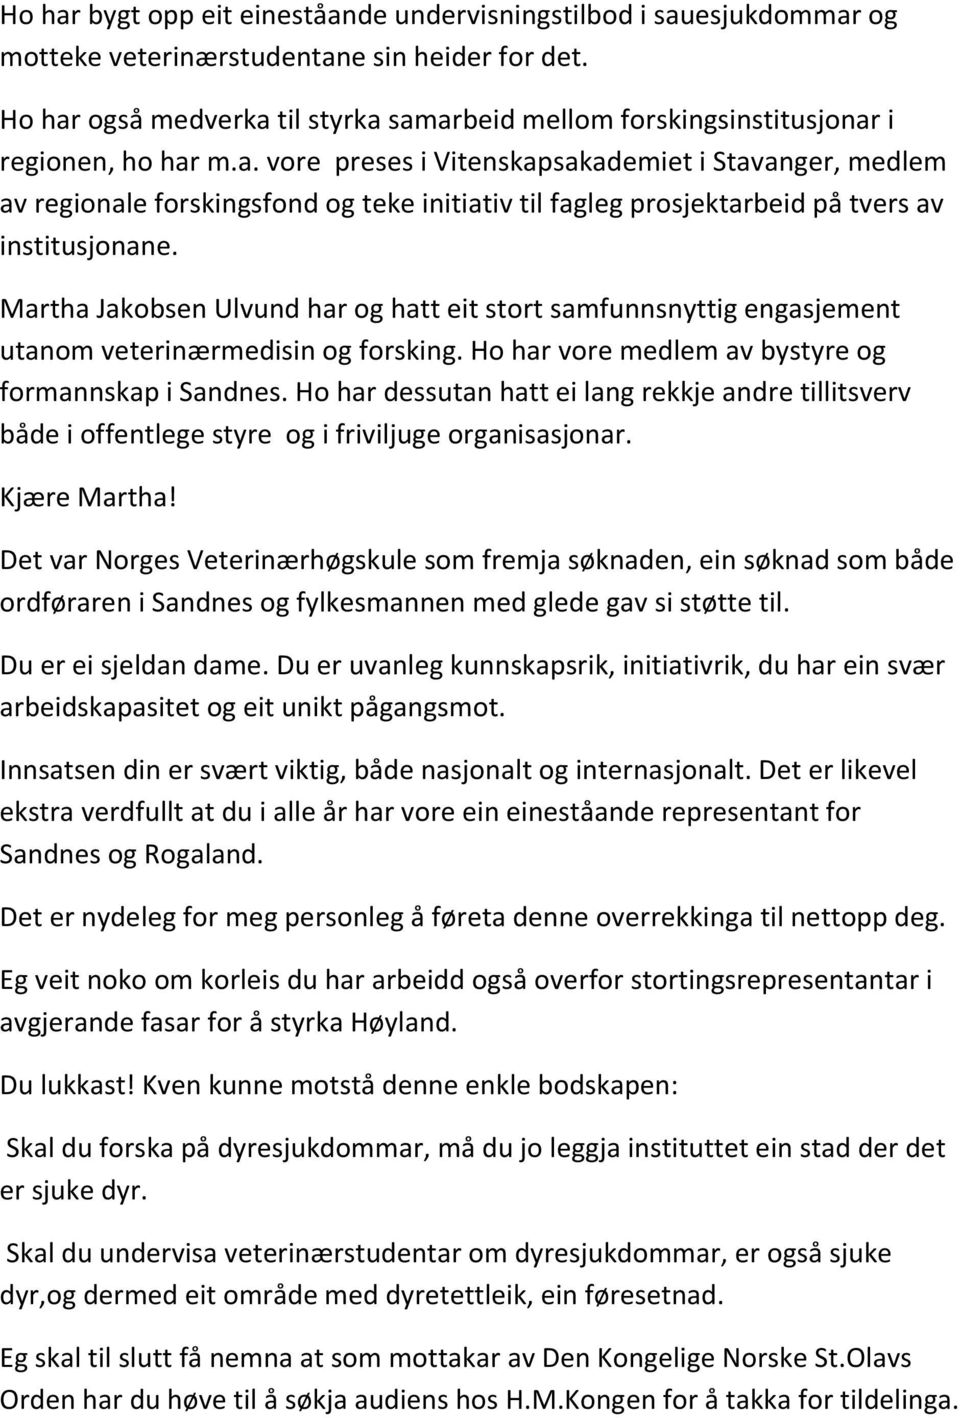 Martha Jakobsen Ulvund har og hatt eit stort samfunnsnyttig engasjement utanom veterinærmedisin og forsking. Ho har vore medlem av bystyre og formannskap i Sandnes.